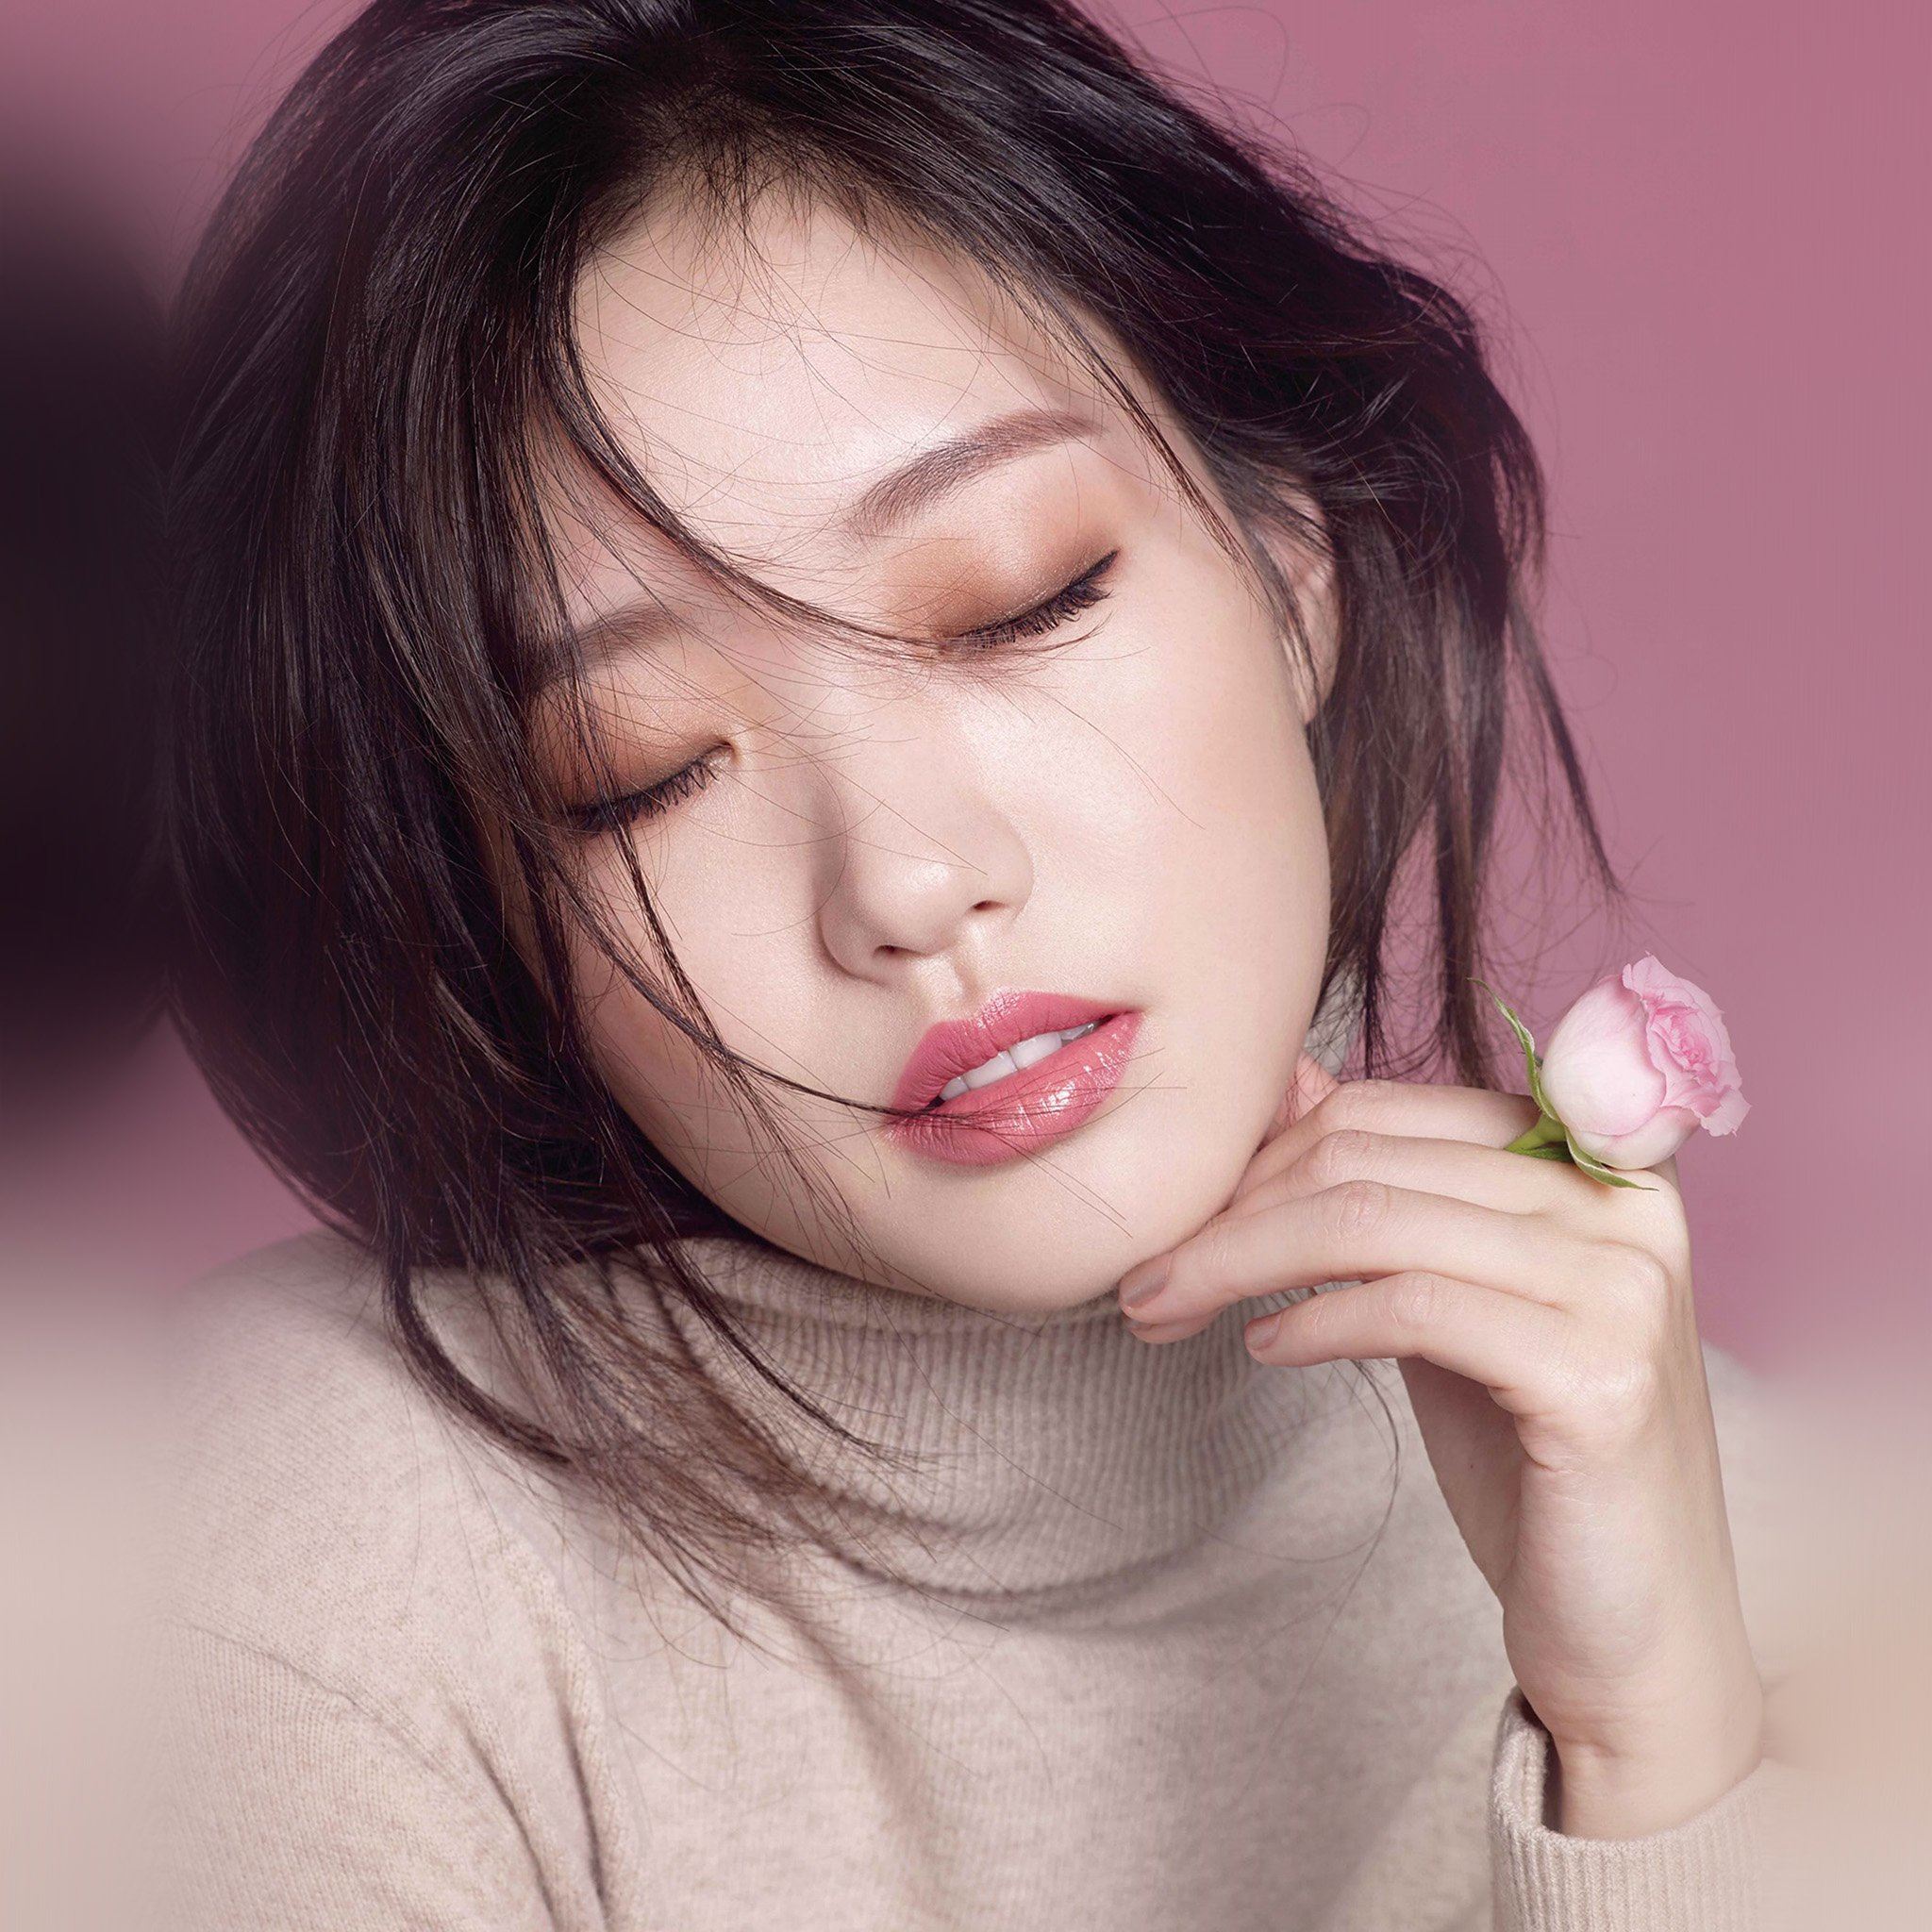 Goeun Kim Kpop Girl Pink iPad Air wallpaper 